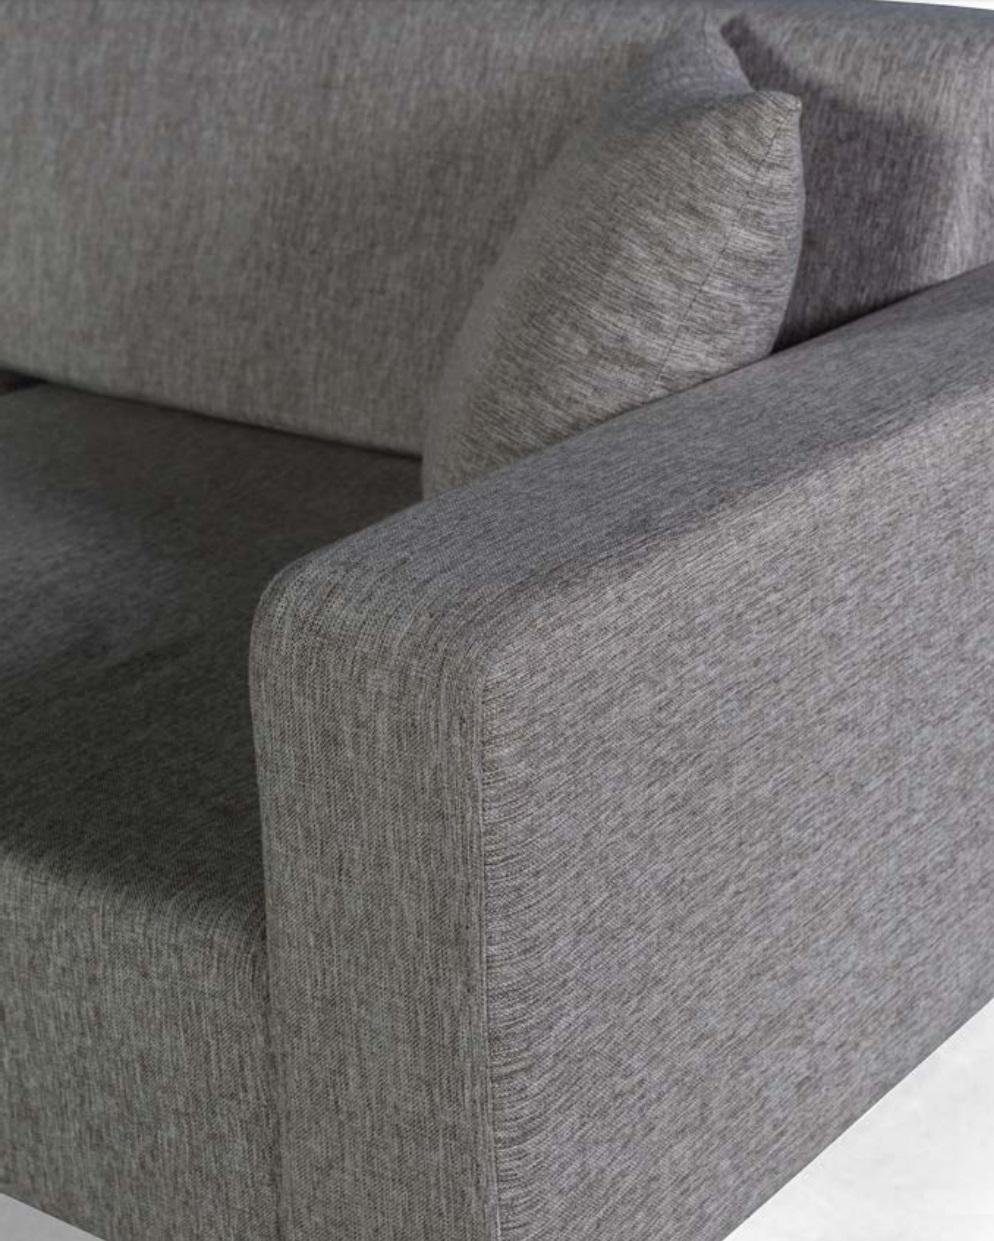 JVmoebel Sofa Textil Europe Sofa Grau, Polster Sitz Couchen Made Dreisitzer Wohnzimmer in